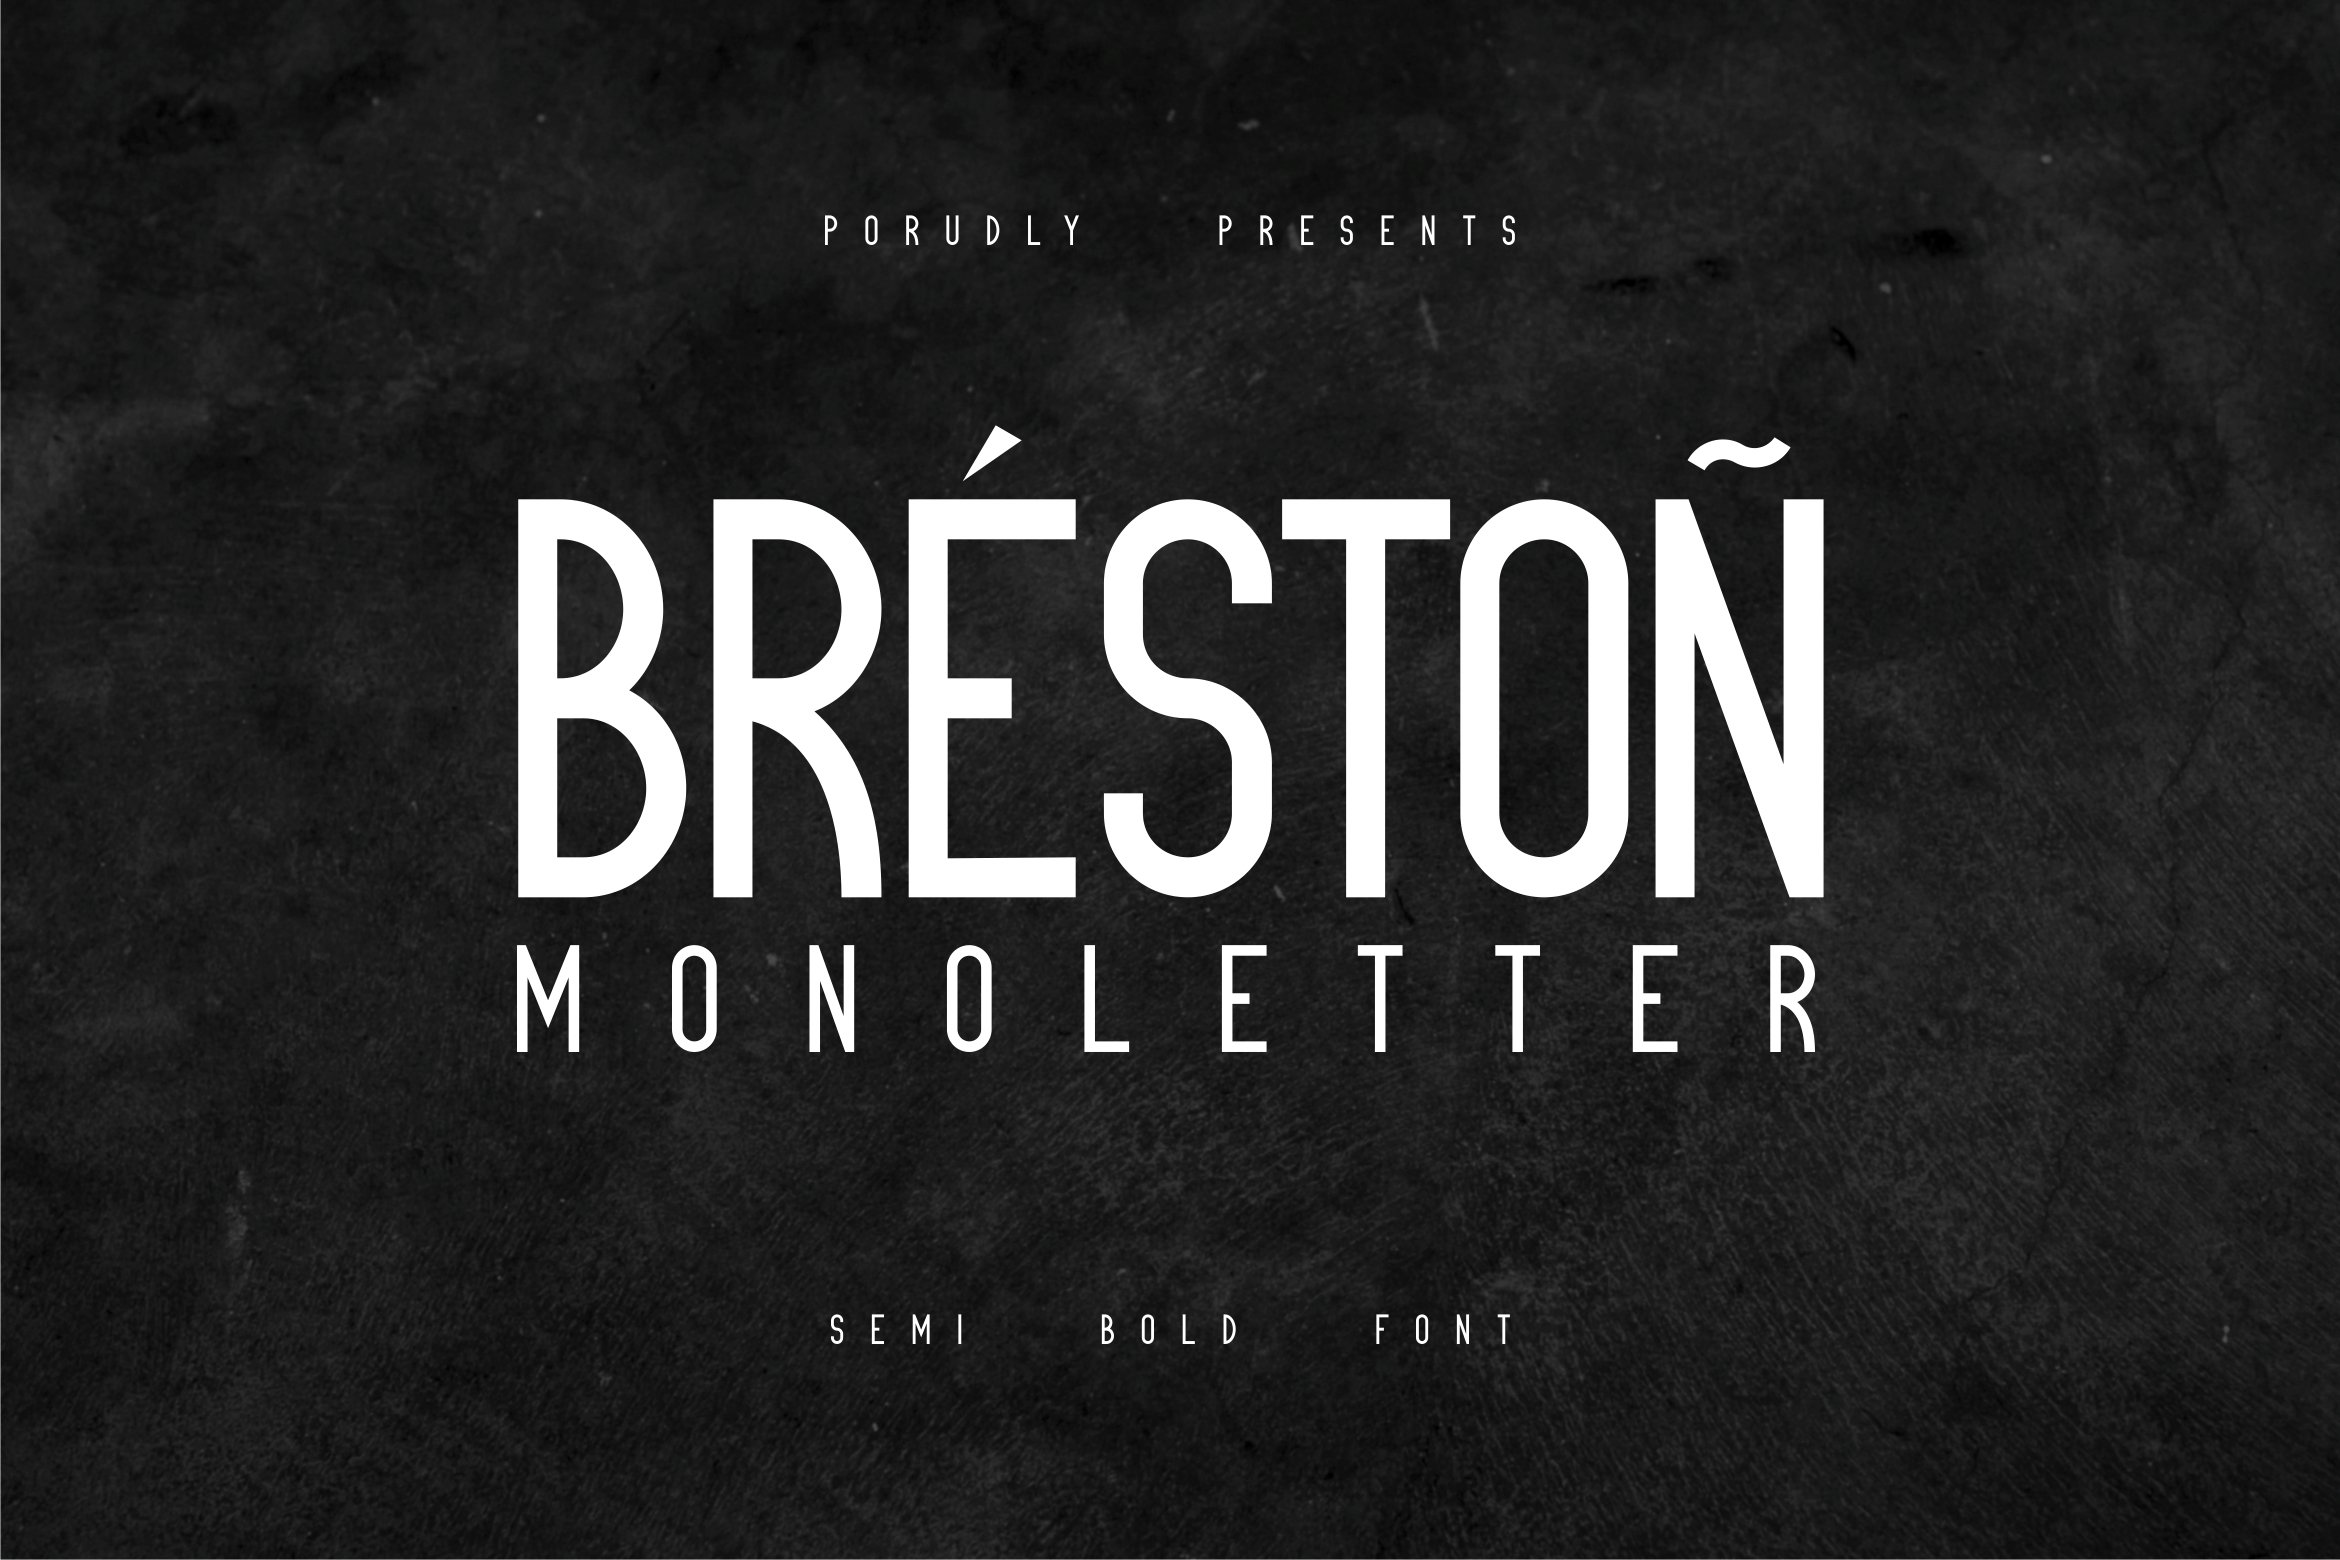 Breston Monoletter Font